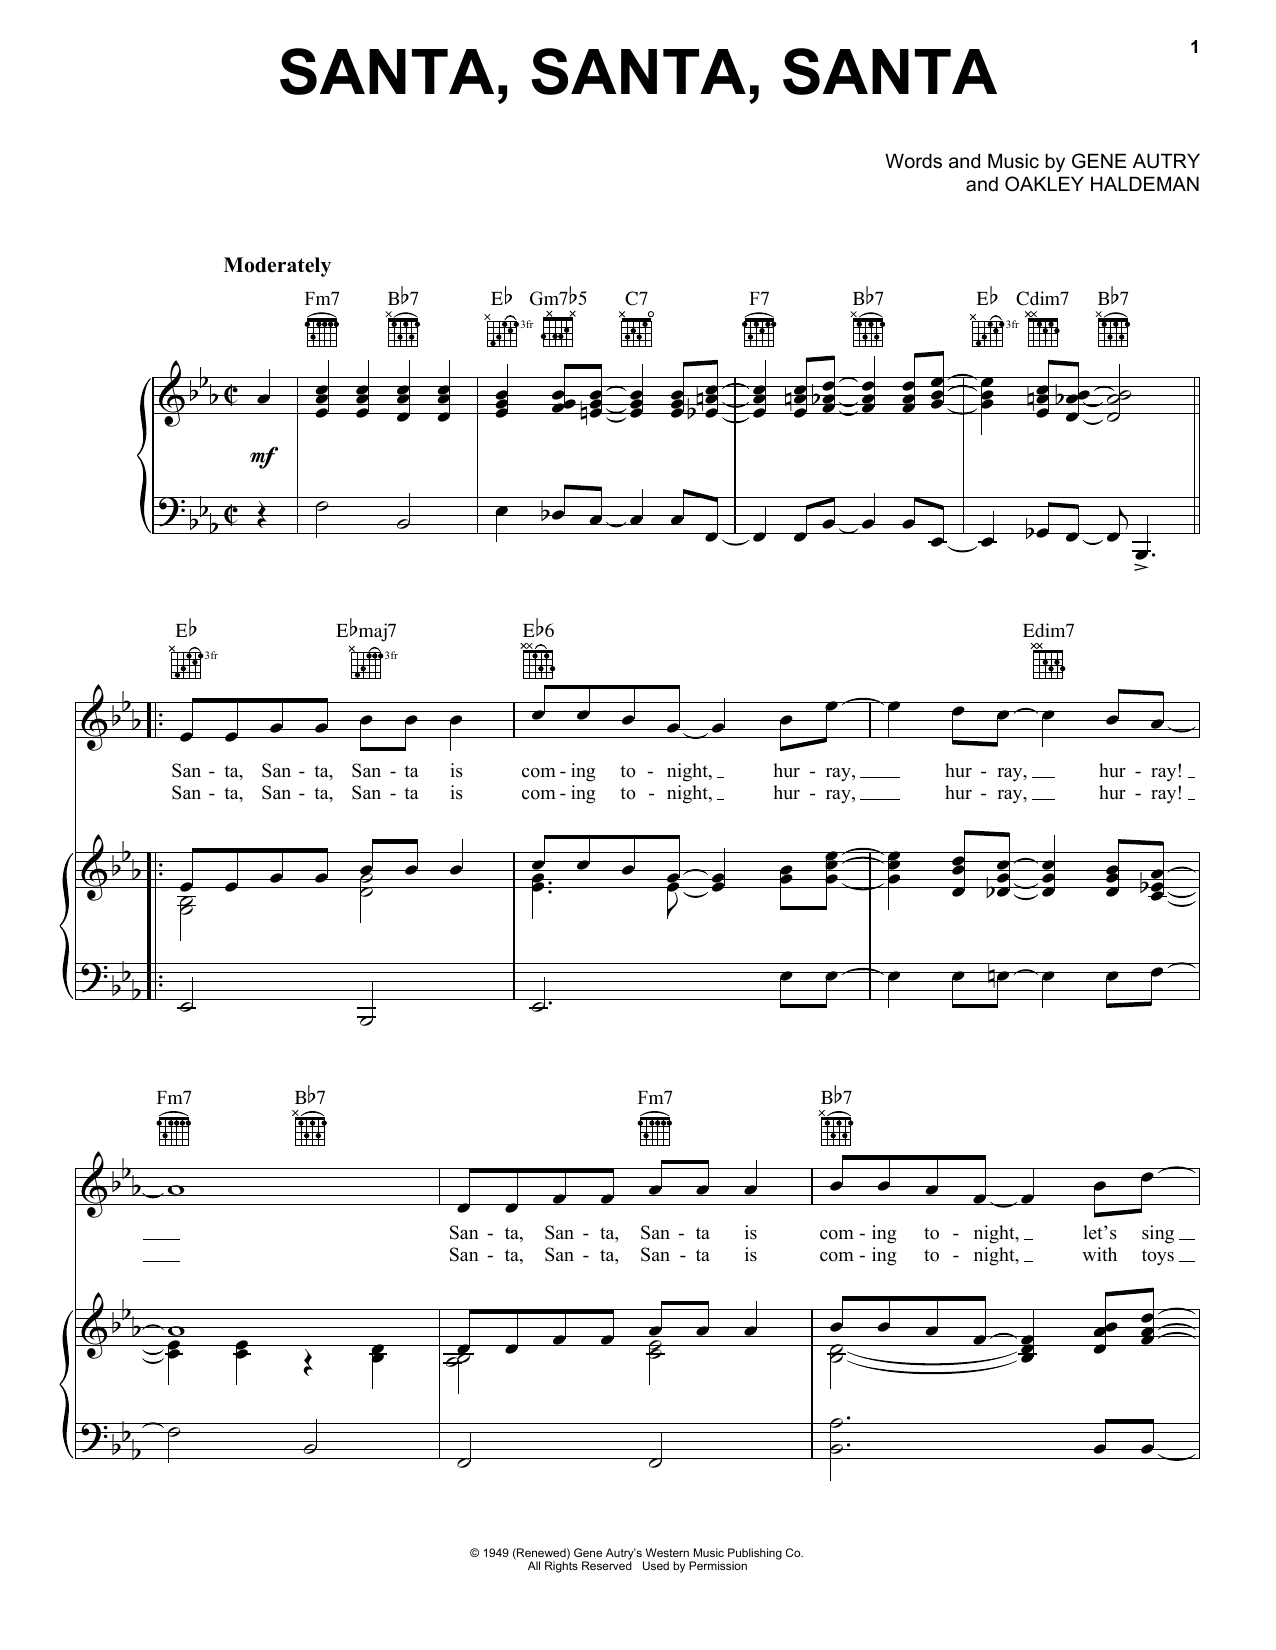 Gene Autry Santa, Santa, Santa Sheet Music Notes & Chords for Piano, Vocal & Guitar (Right-Hand Melody) - Download or Print PDF